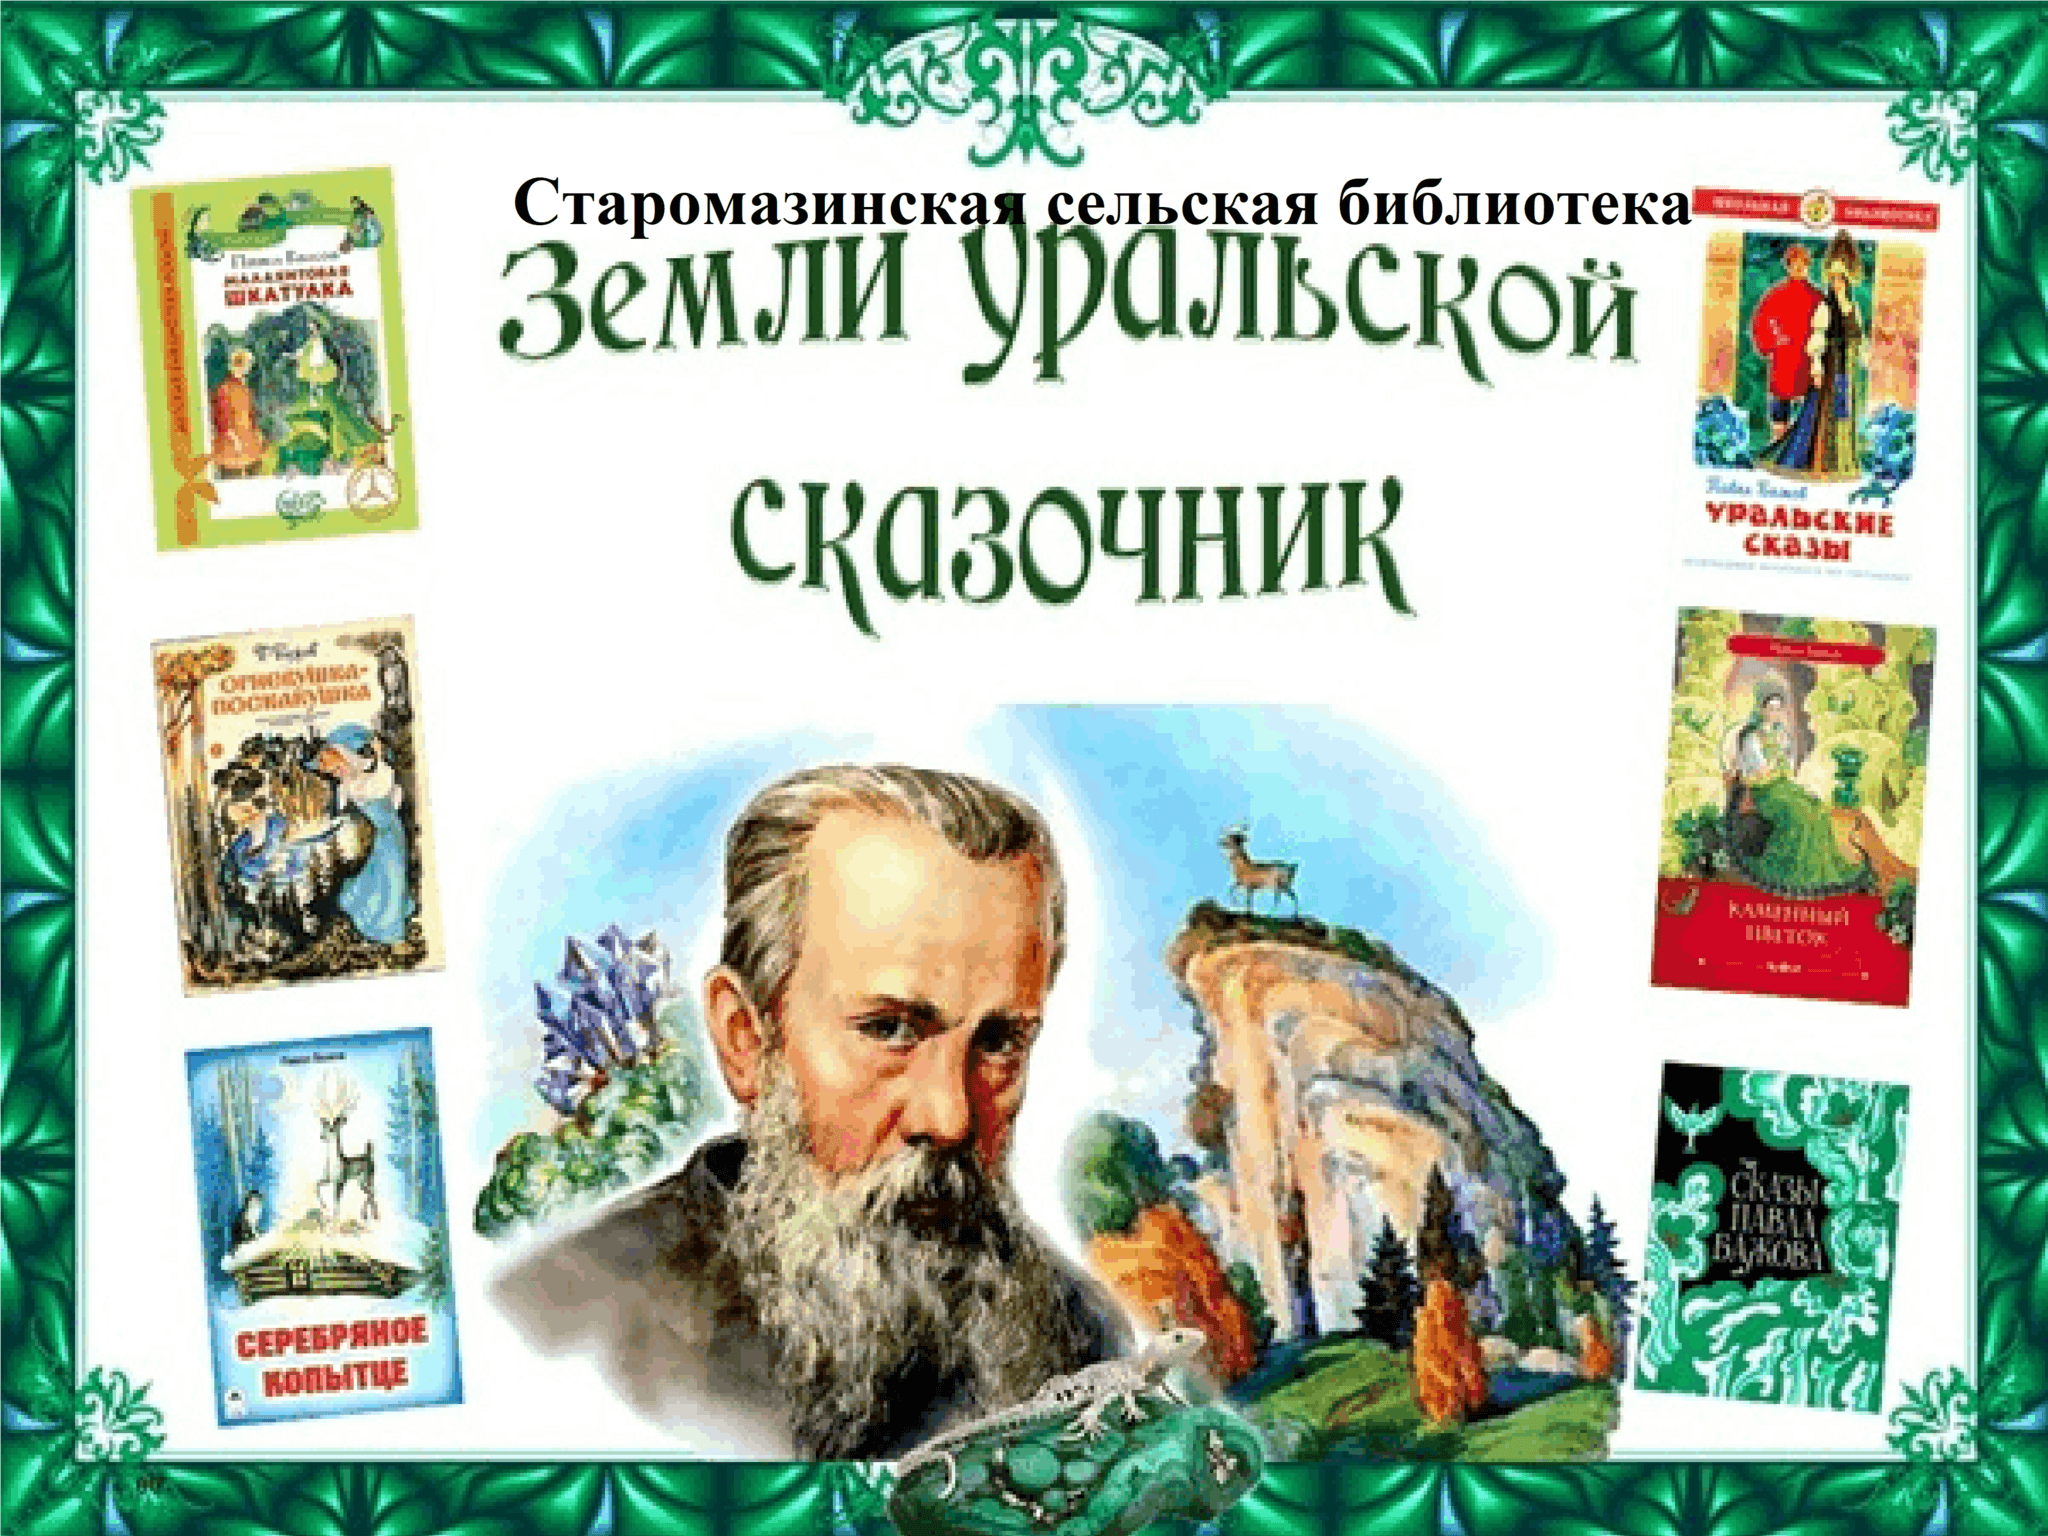 Известный уральский писатель бажов являлся автором. Уральский сказочник Бажов.